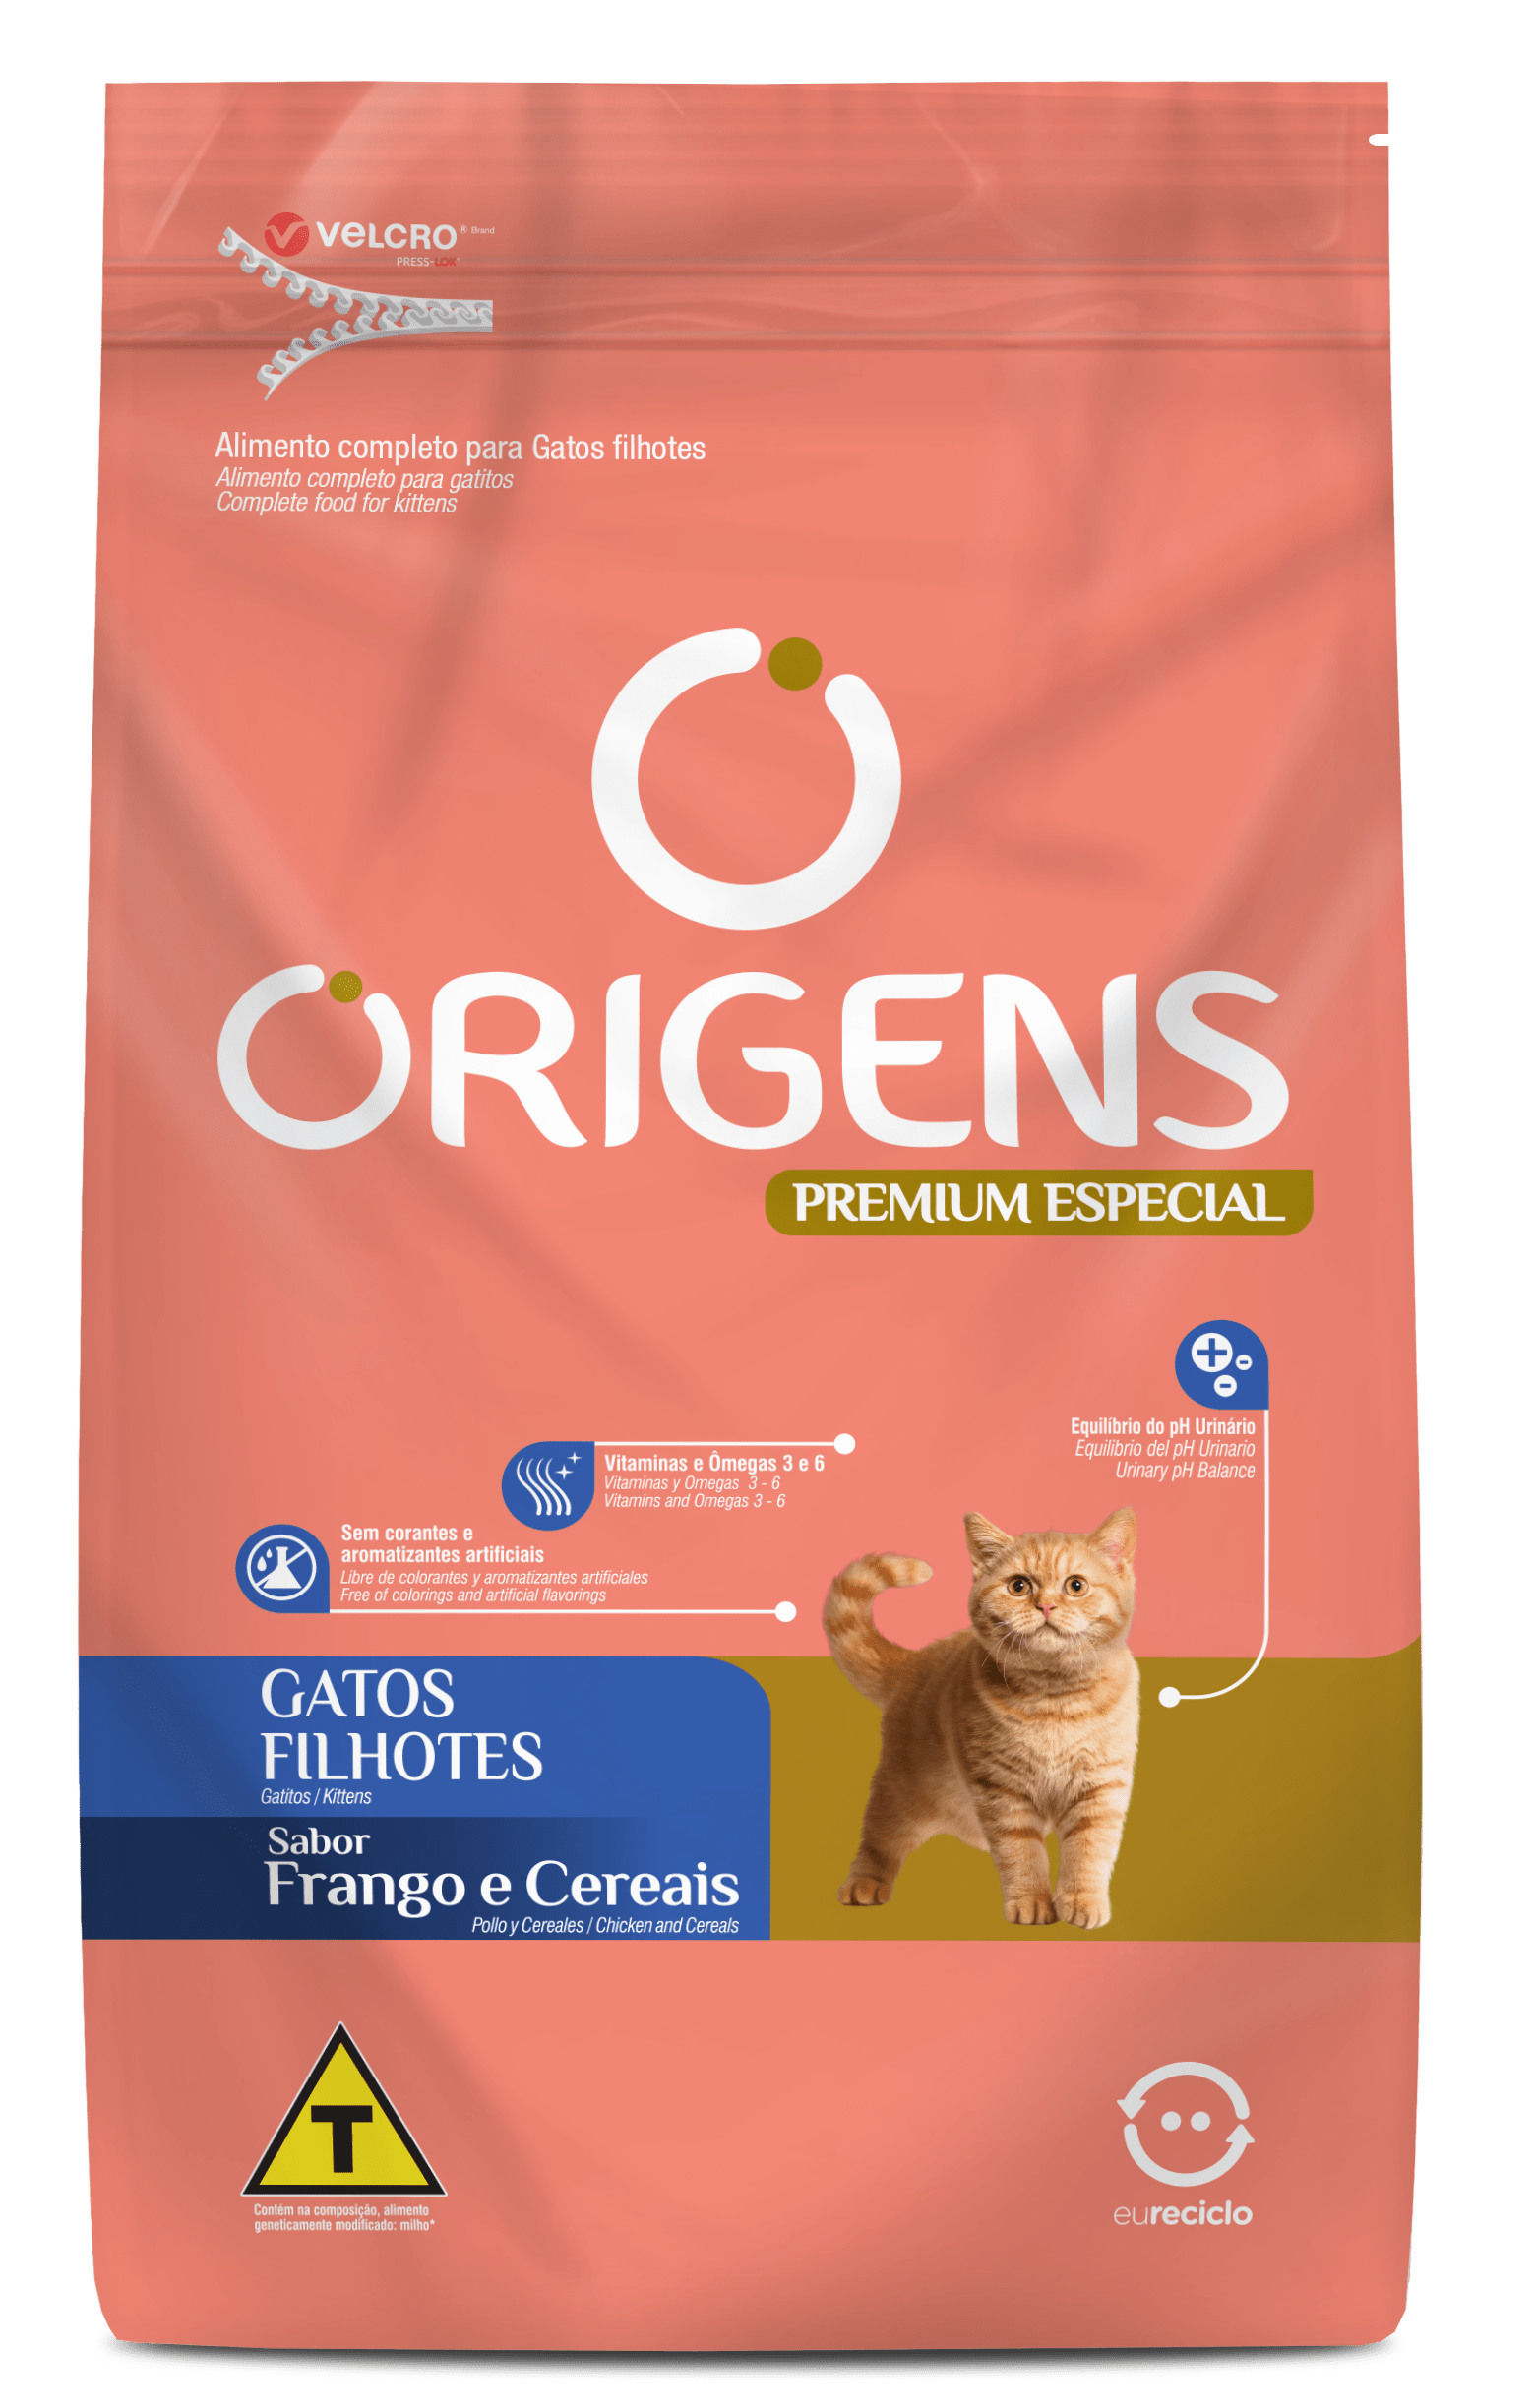 Origens Premium Especial Kittens Chicken and Cereals flavor